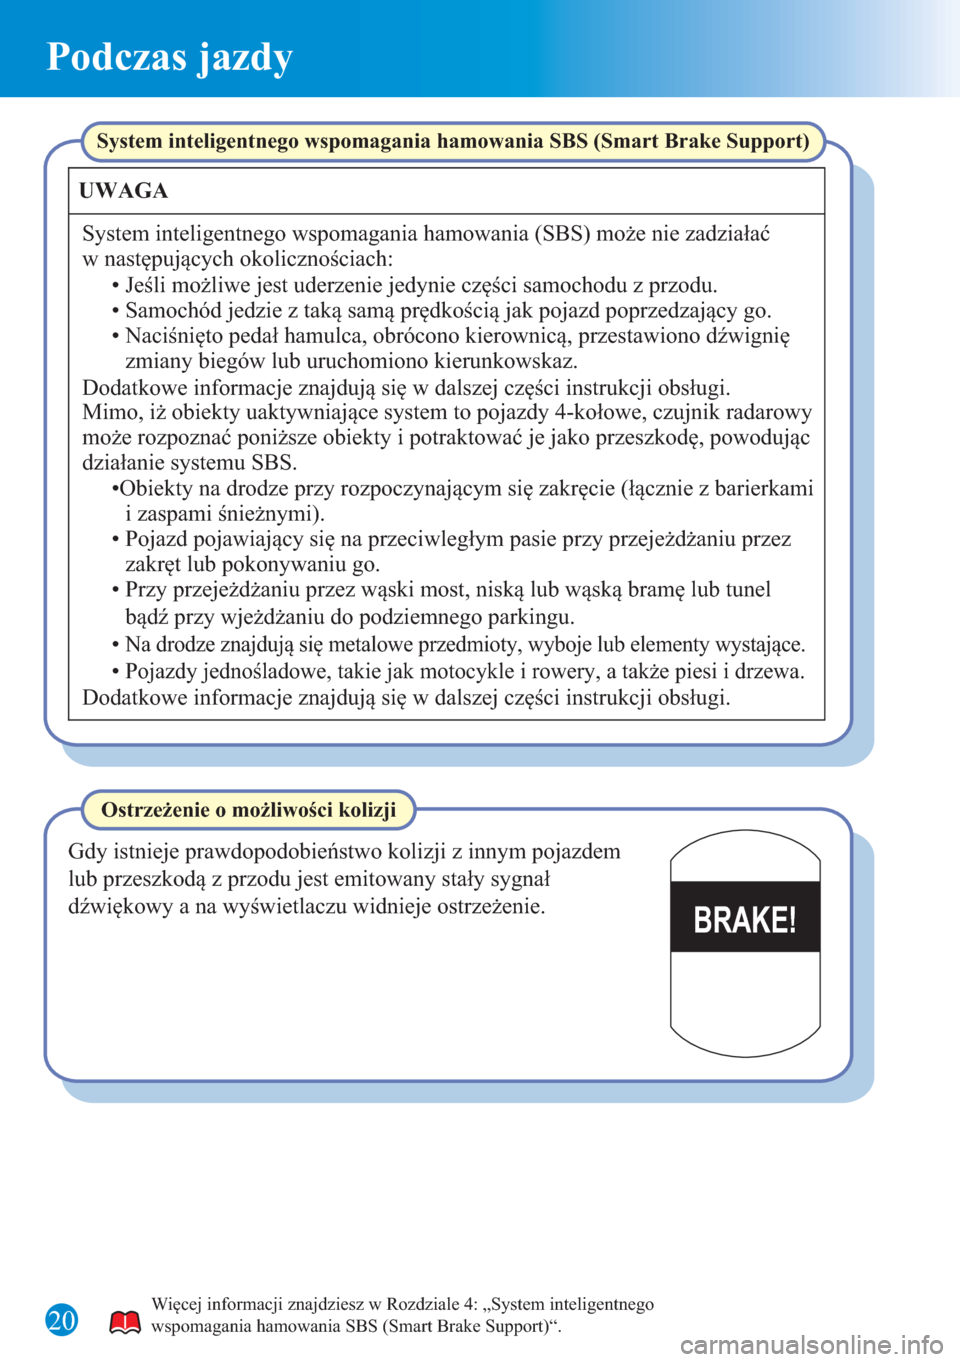 MAZDA MODEL 6 2015  Krótki Przewodnik (in Polish) Podczas jazdy
20
BRAKE!
Więcej informacji znajdziesz w Rozdziale 4: „System inteligentnego 
wspomagania hamowania SBS (Smart Brake Support)“.
System inteligentnego wspomagania hamowania SBS (Smar